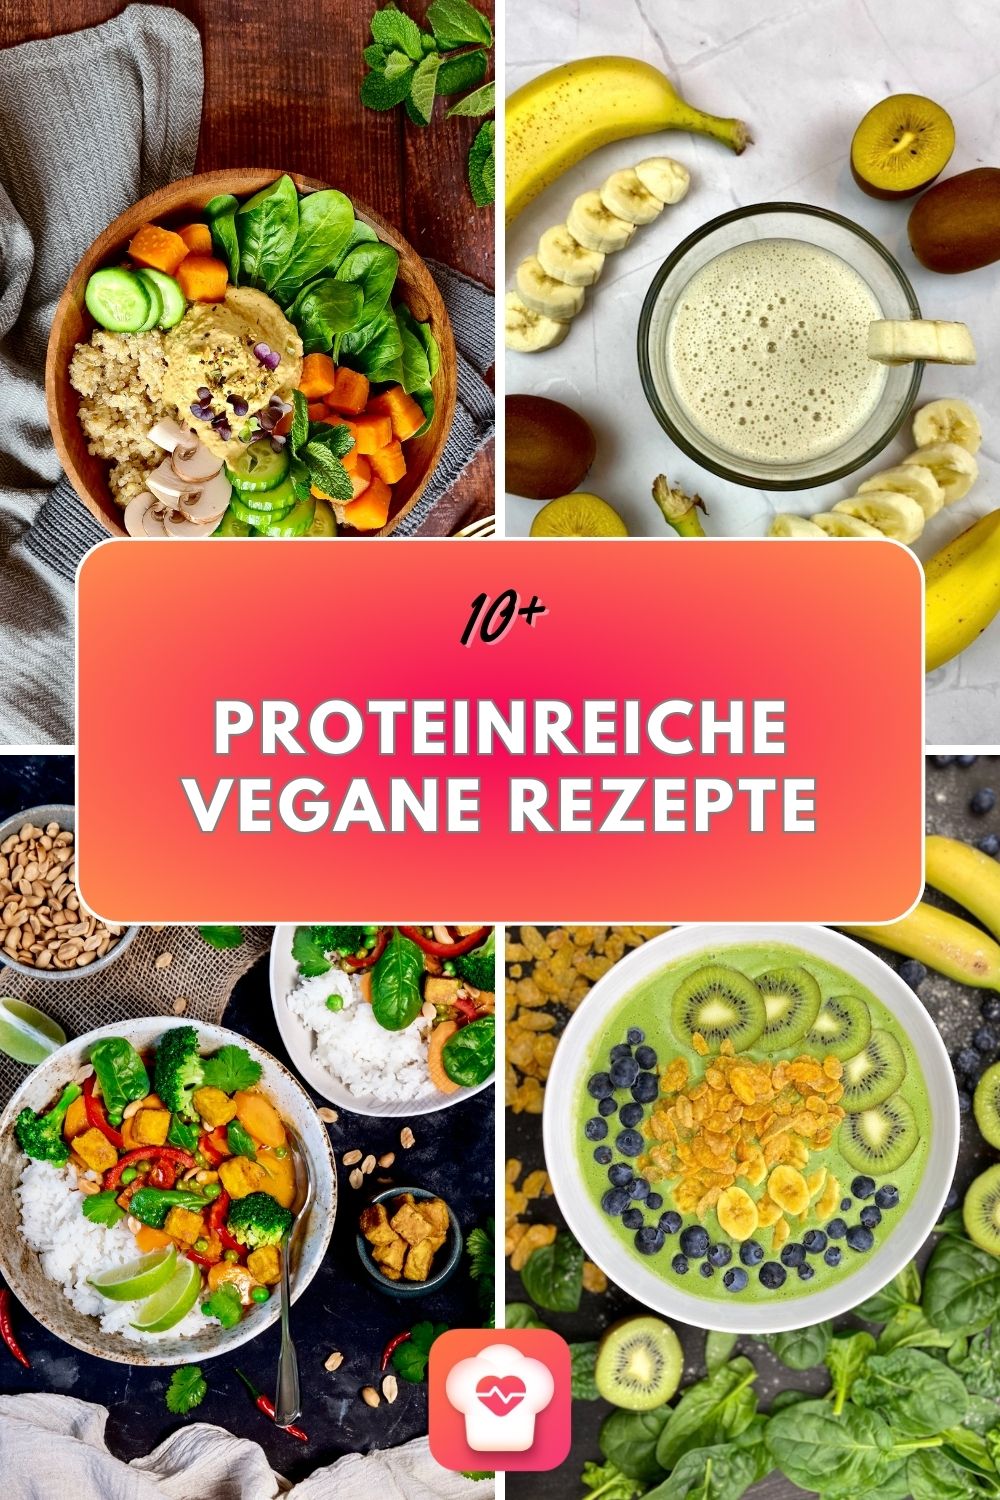 10+ Proteinreiche vegane Rezepte - Für Training und Muskelaufbau